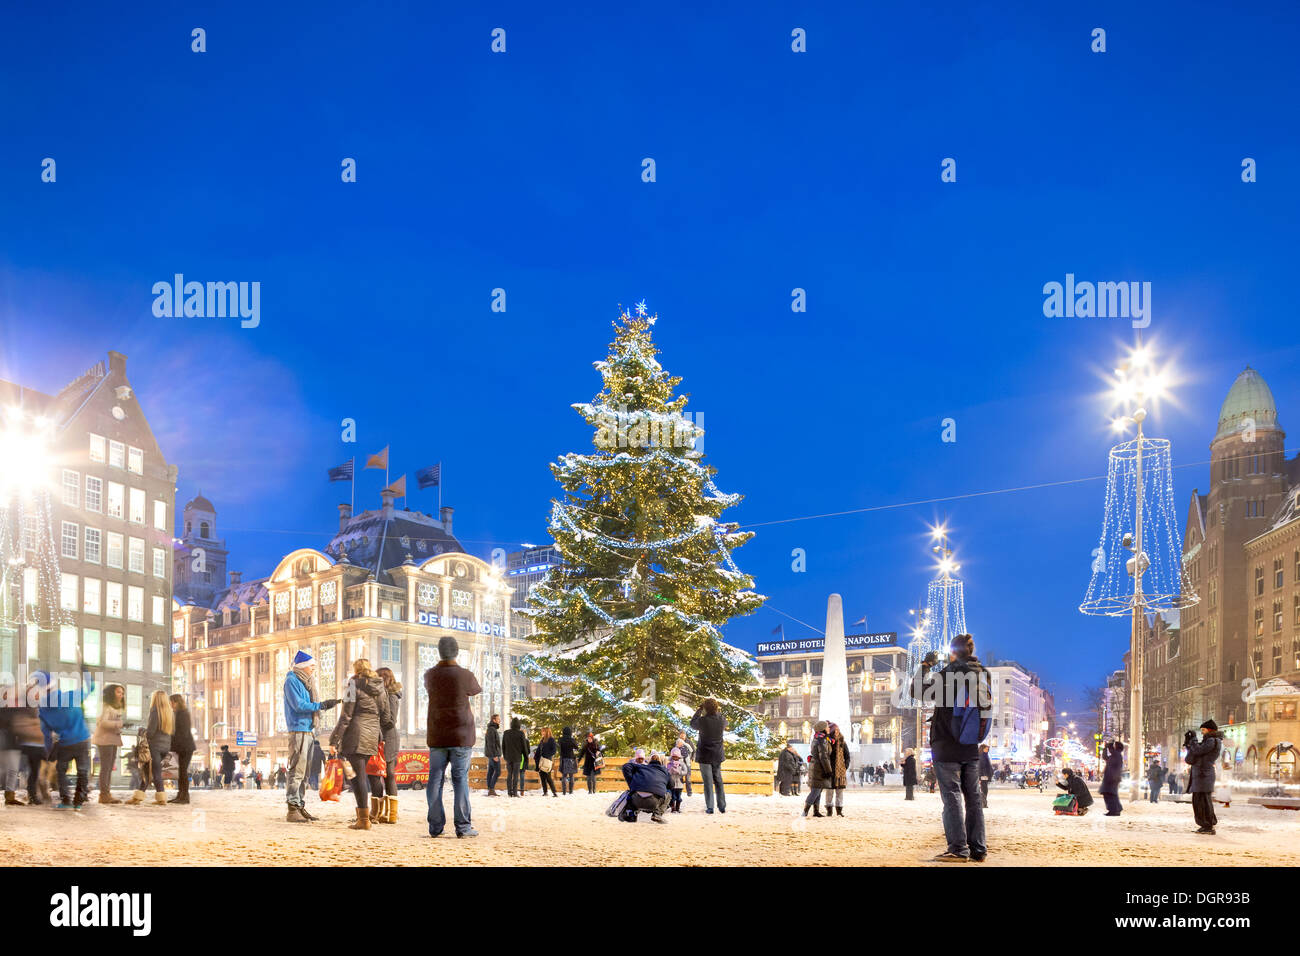 L'arbre de Noël d'Amsterdam w neige, feux de Noël sur la place du Dam avec les gens, touristes, visiteurs, poser et prendre des photos au crépuscule Banque D'Images